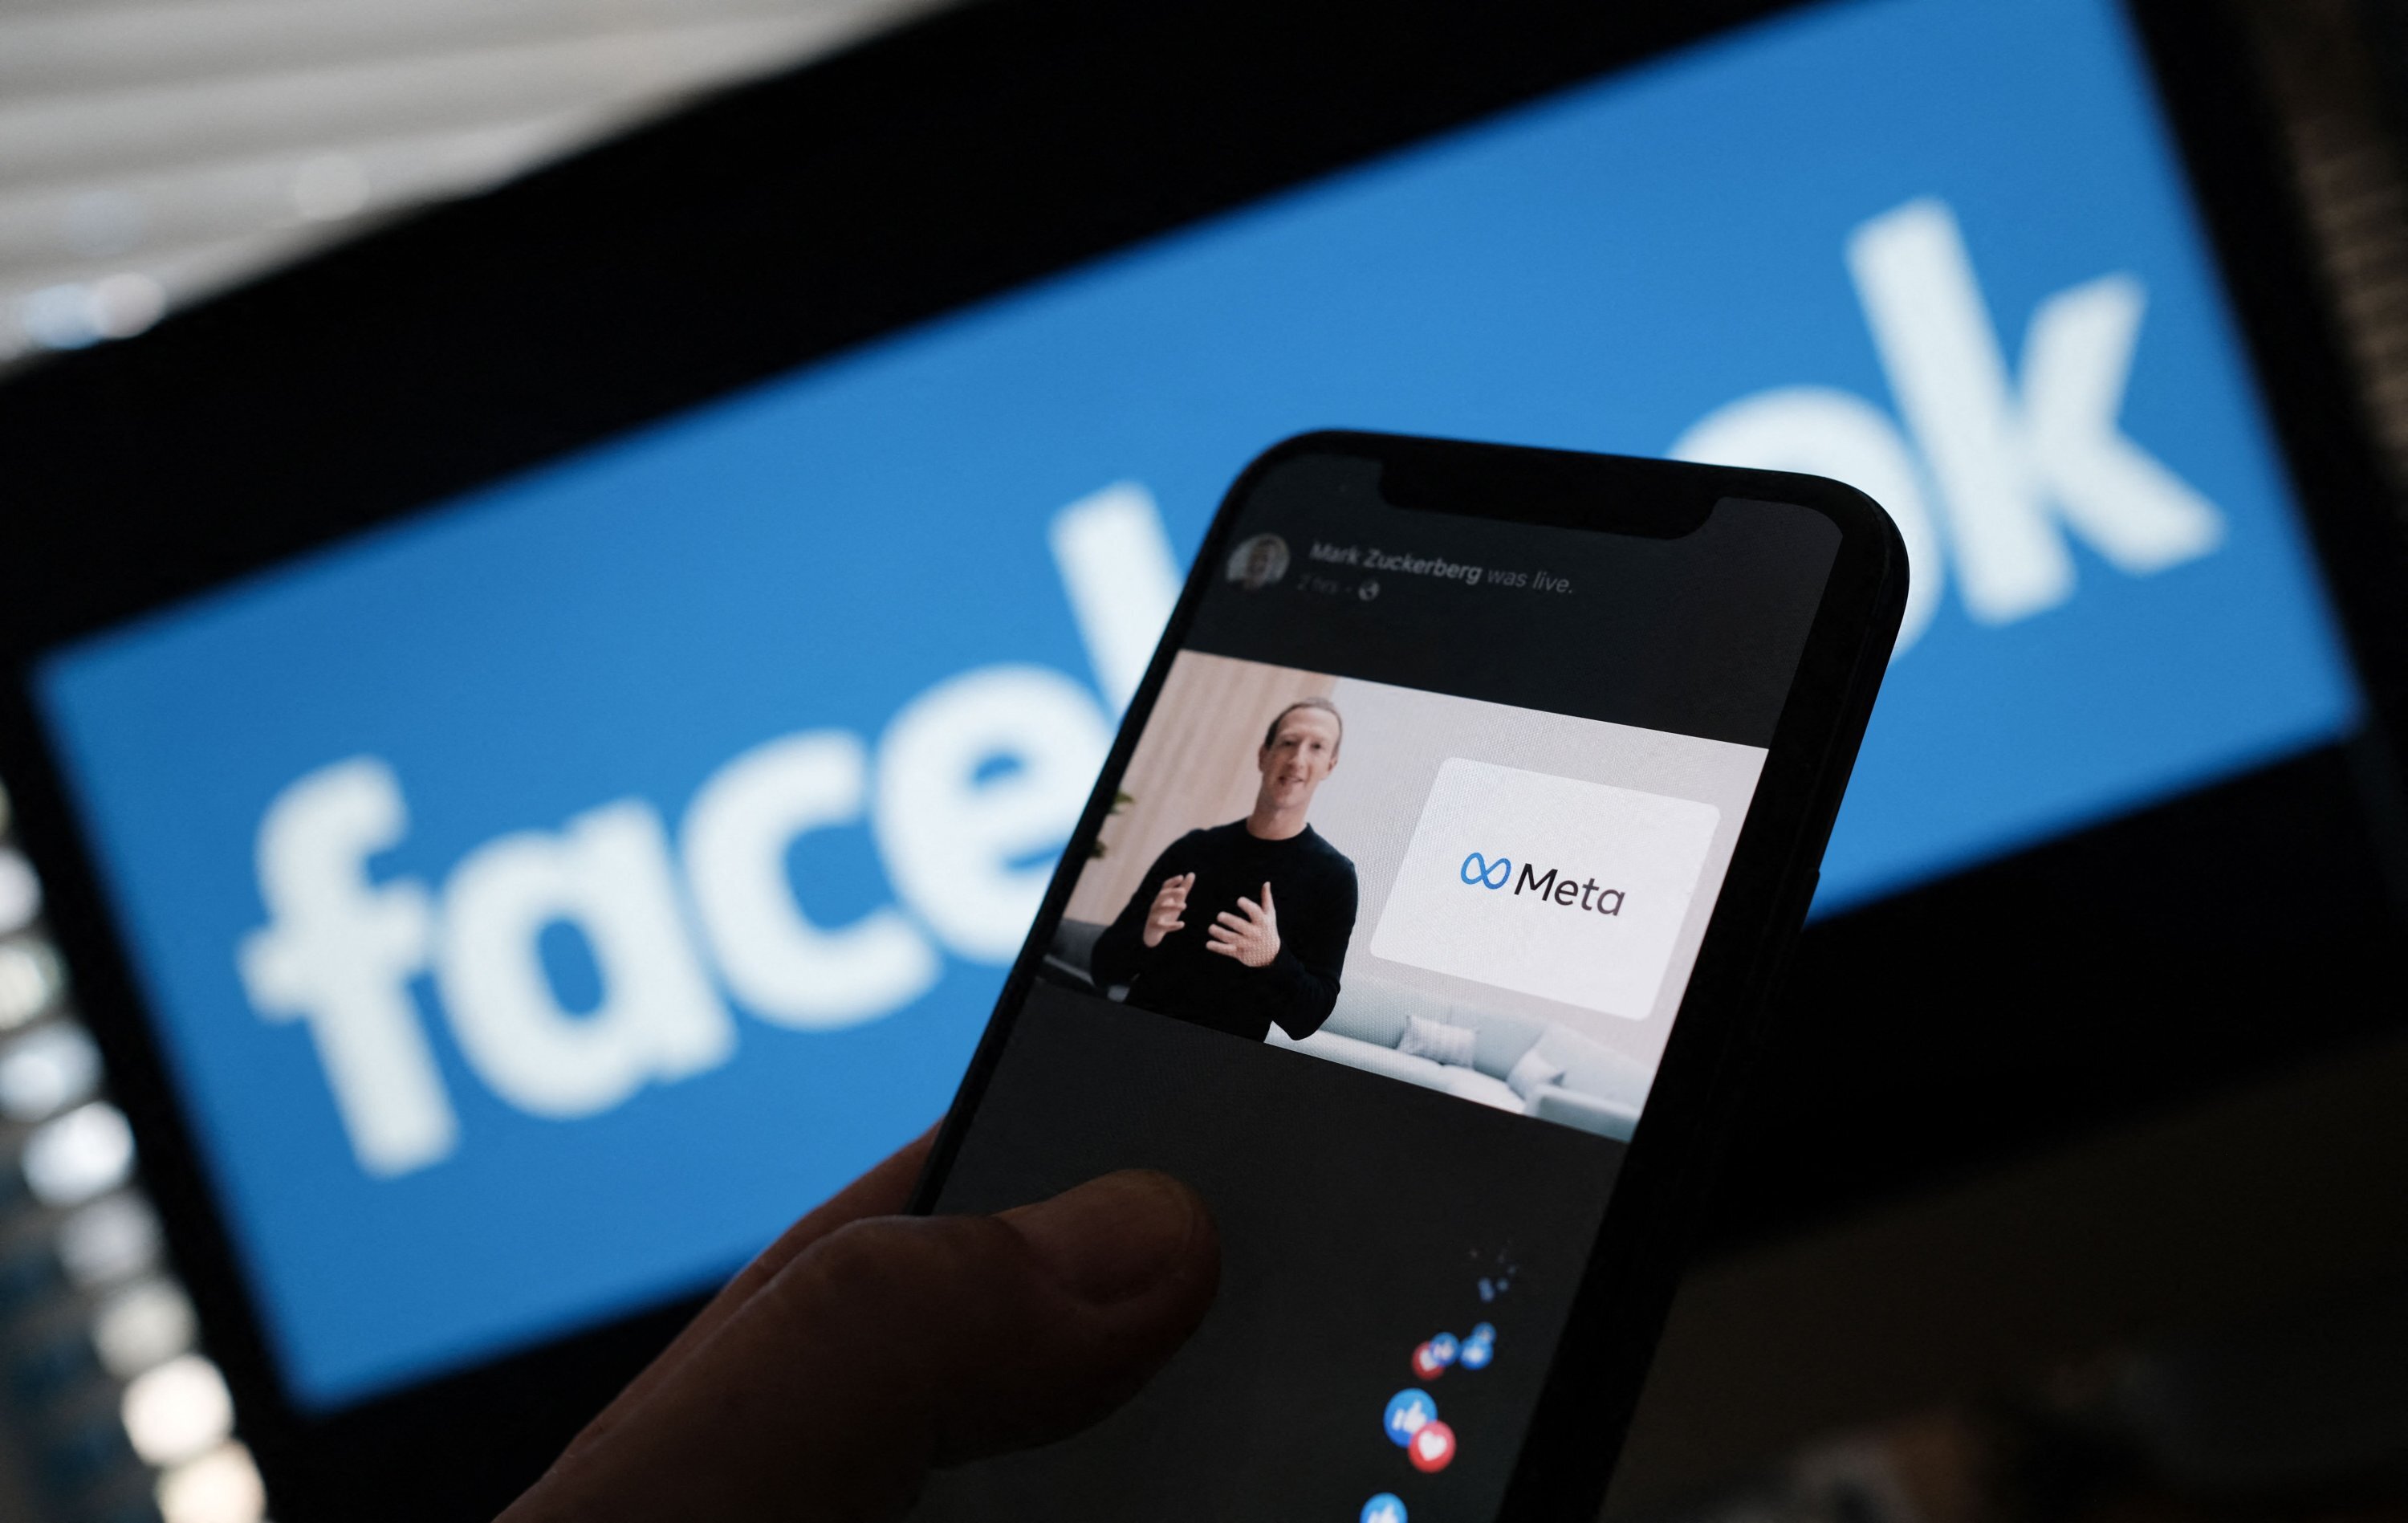 Για πρώτη φορά το Facebook ανακοινώνει σημαντική πτώση στους χρήστες που το χρησιμοποιούν καθημερινά